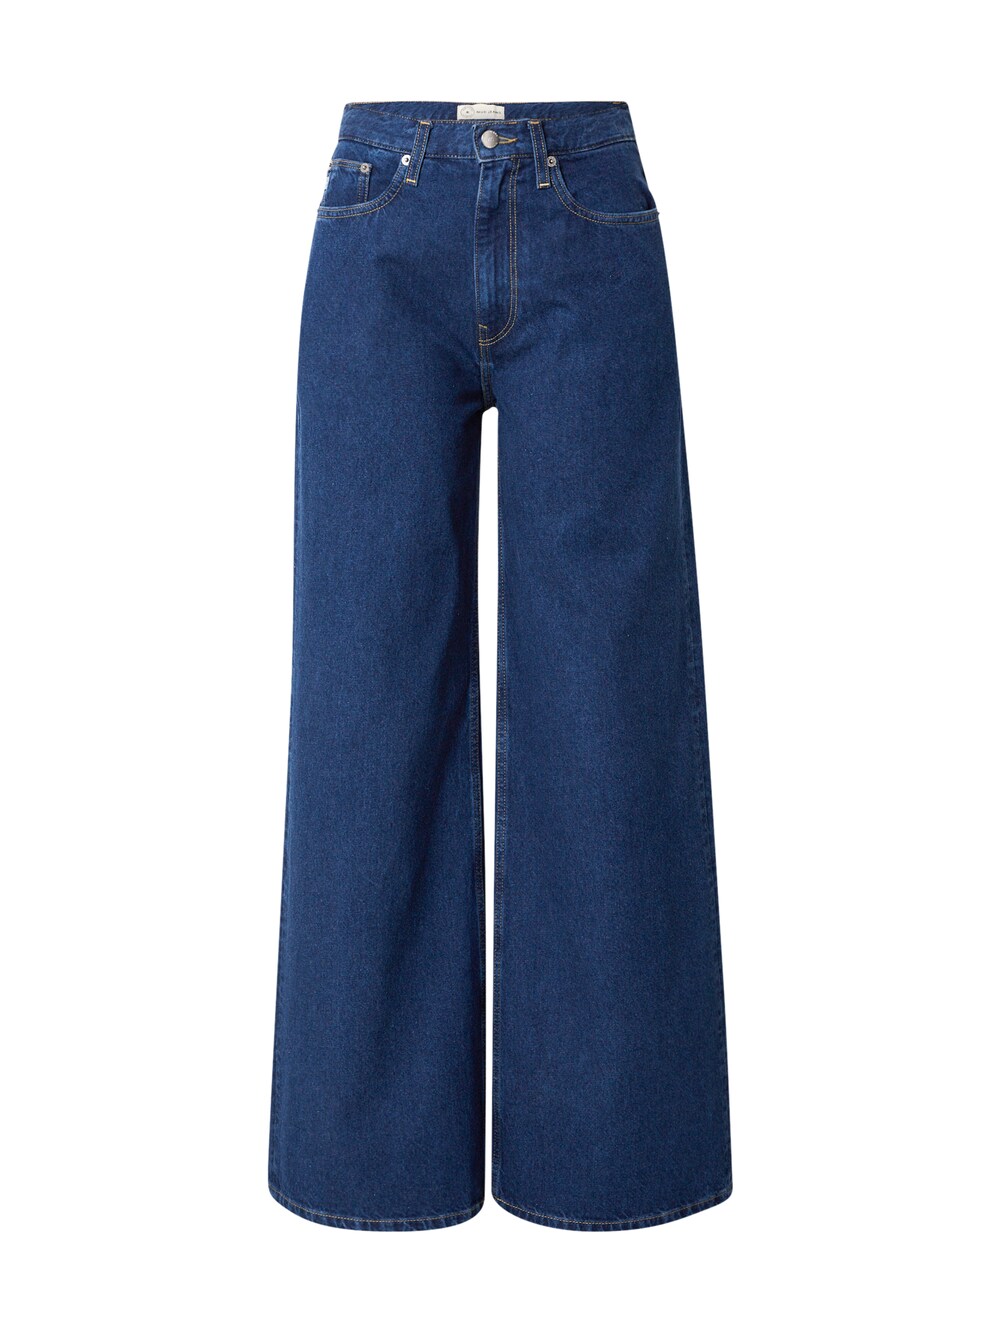 Широкие джинсы Mud Jeans Sara, синий широкие джинсы mud jeans sara синий